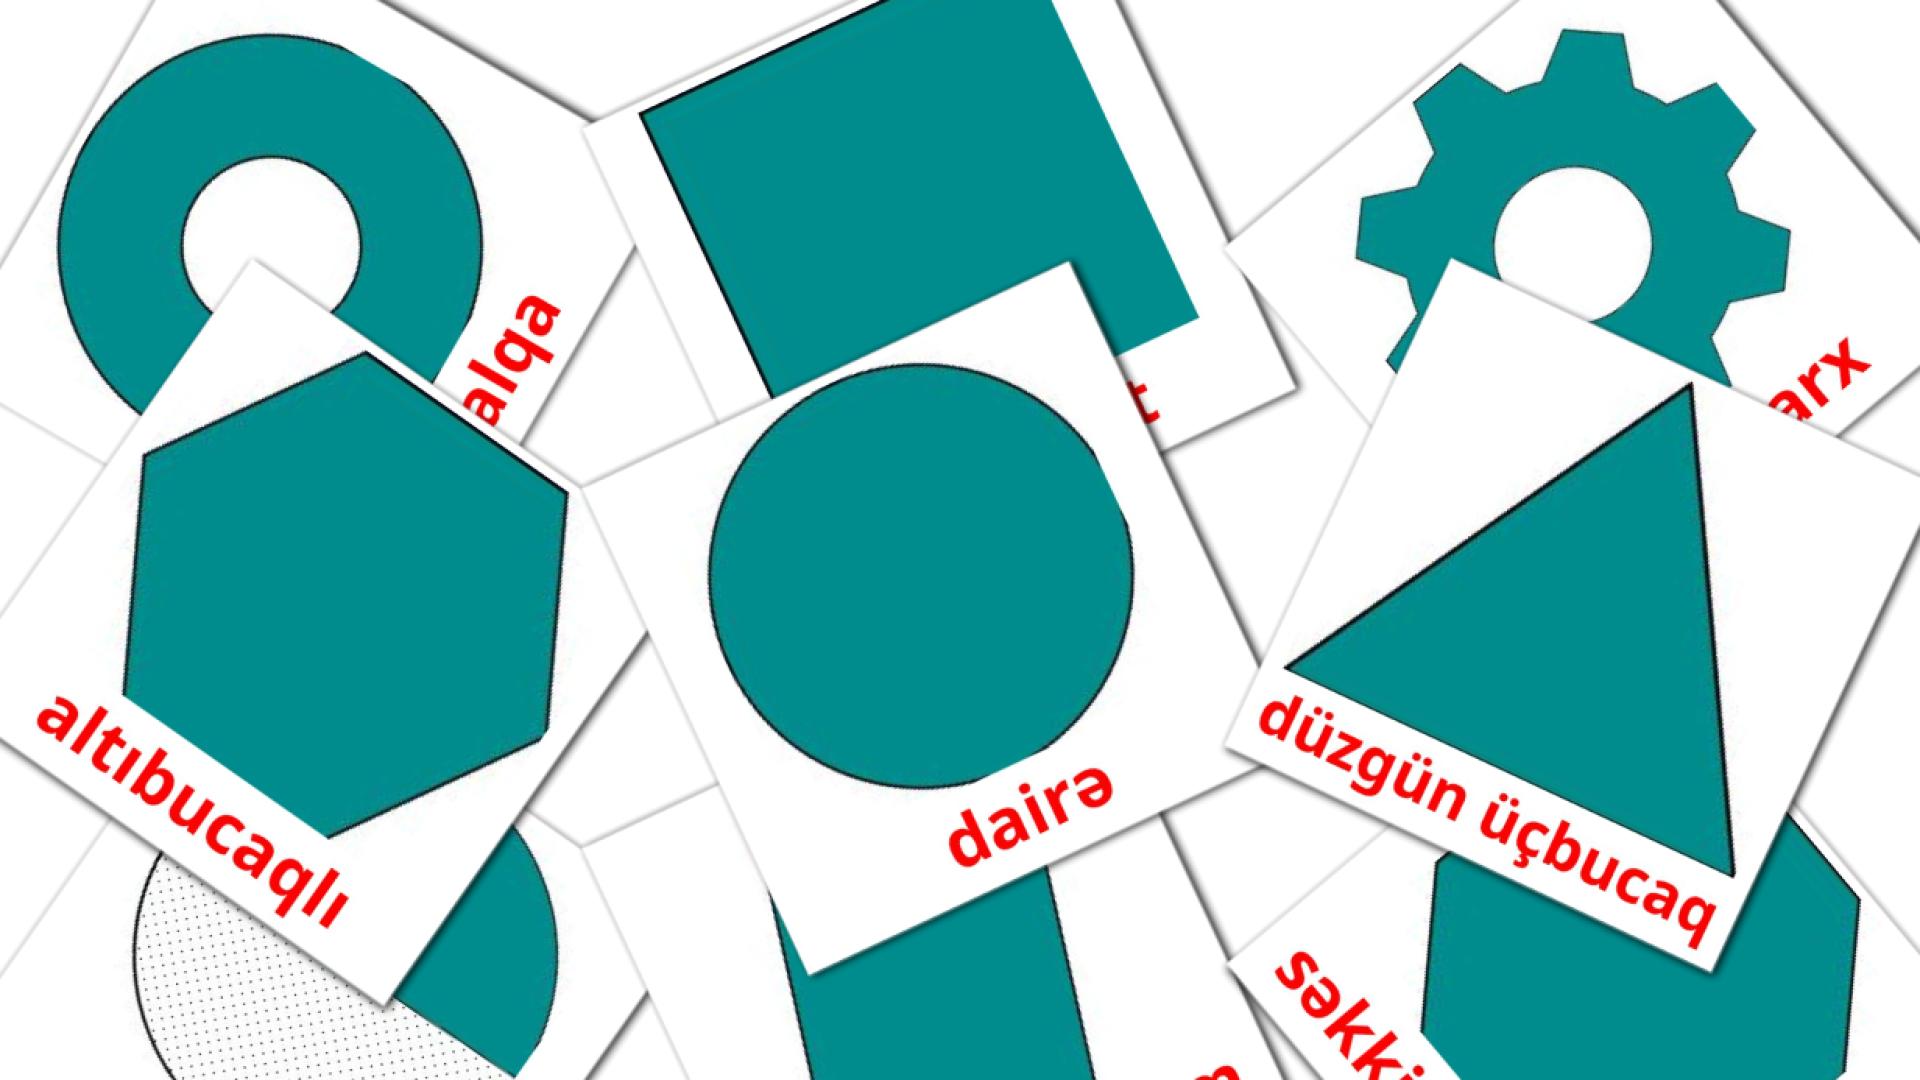 Figuras  2D - tarjetas de vocabulario en azerbaiyano